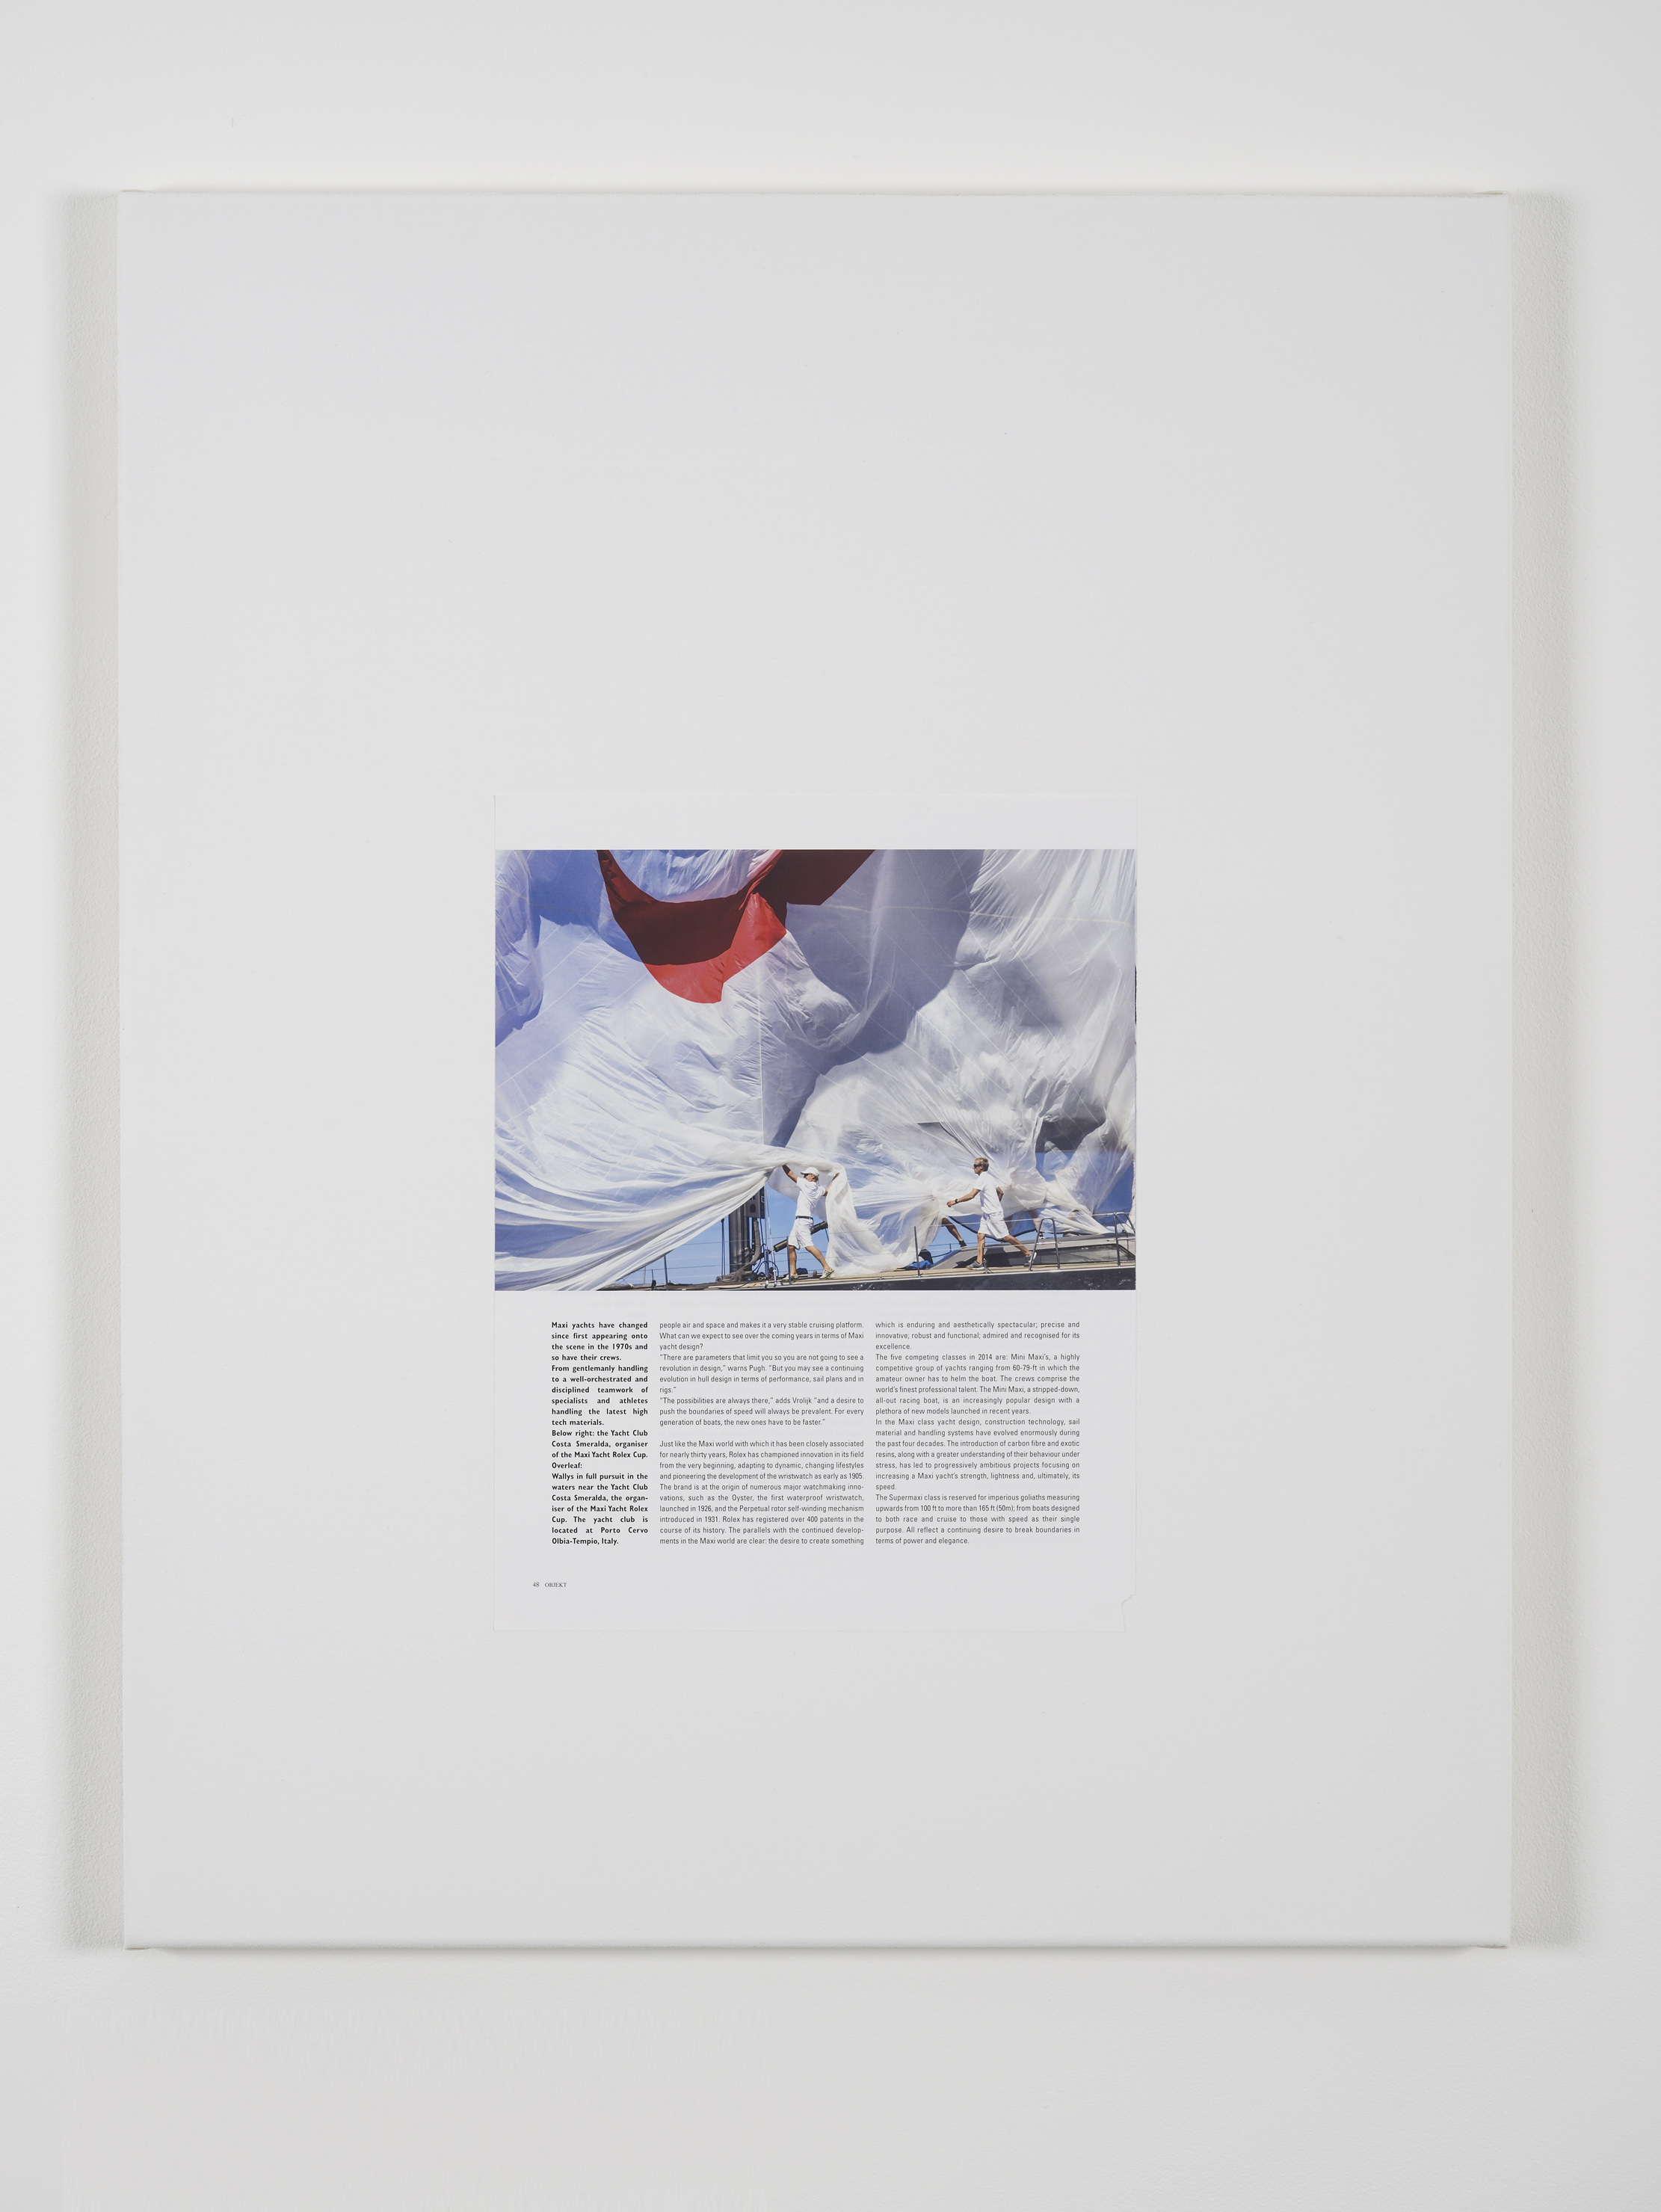 Erika Landström, Need for Speed, 2015, Magazine page and gesso on canvas, 63 x 50 cm, 24 3/4 x 19 3/4 ins. Nein ist für lange weile
, Erika Landström, Dana Munro and Anna Zacharoff